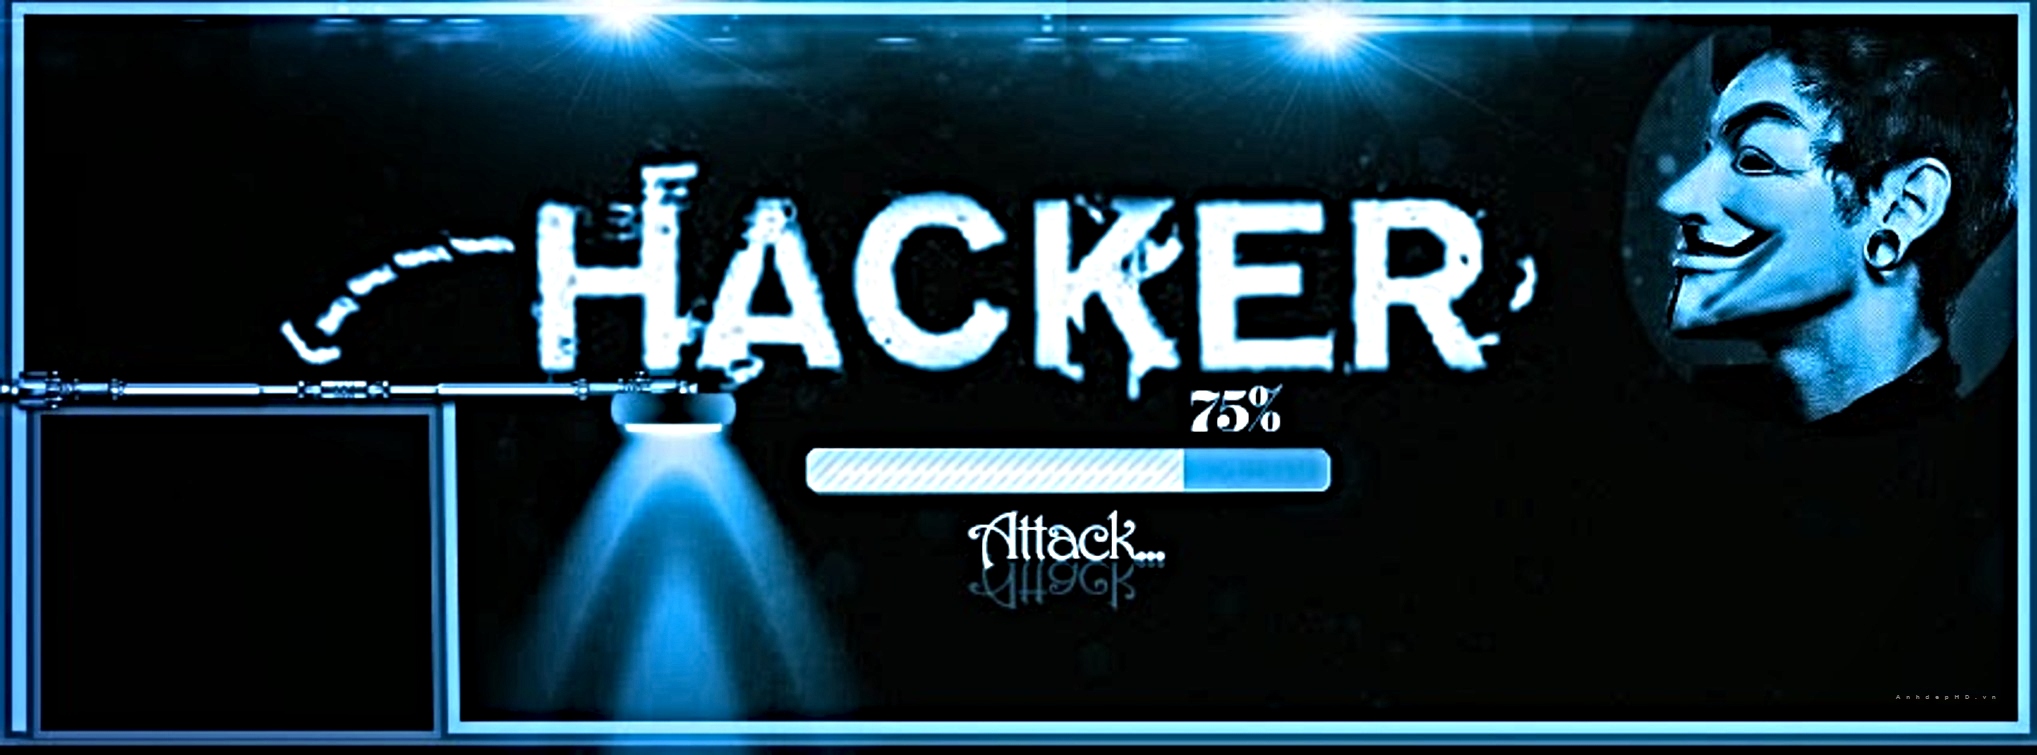 Đụng đến hacker là đụng đến chất xám đấy! Họ được ví như những siêu anh hùng của thế giới công nghệ, với khả năng nhập vai vào hệ thống và giải quyết những vấn đề cực kỳ khó nhằn. Bạn sẽ được biết thêm về thế giới của hacker khi xem ảnh liên quan.